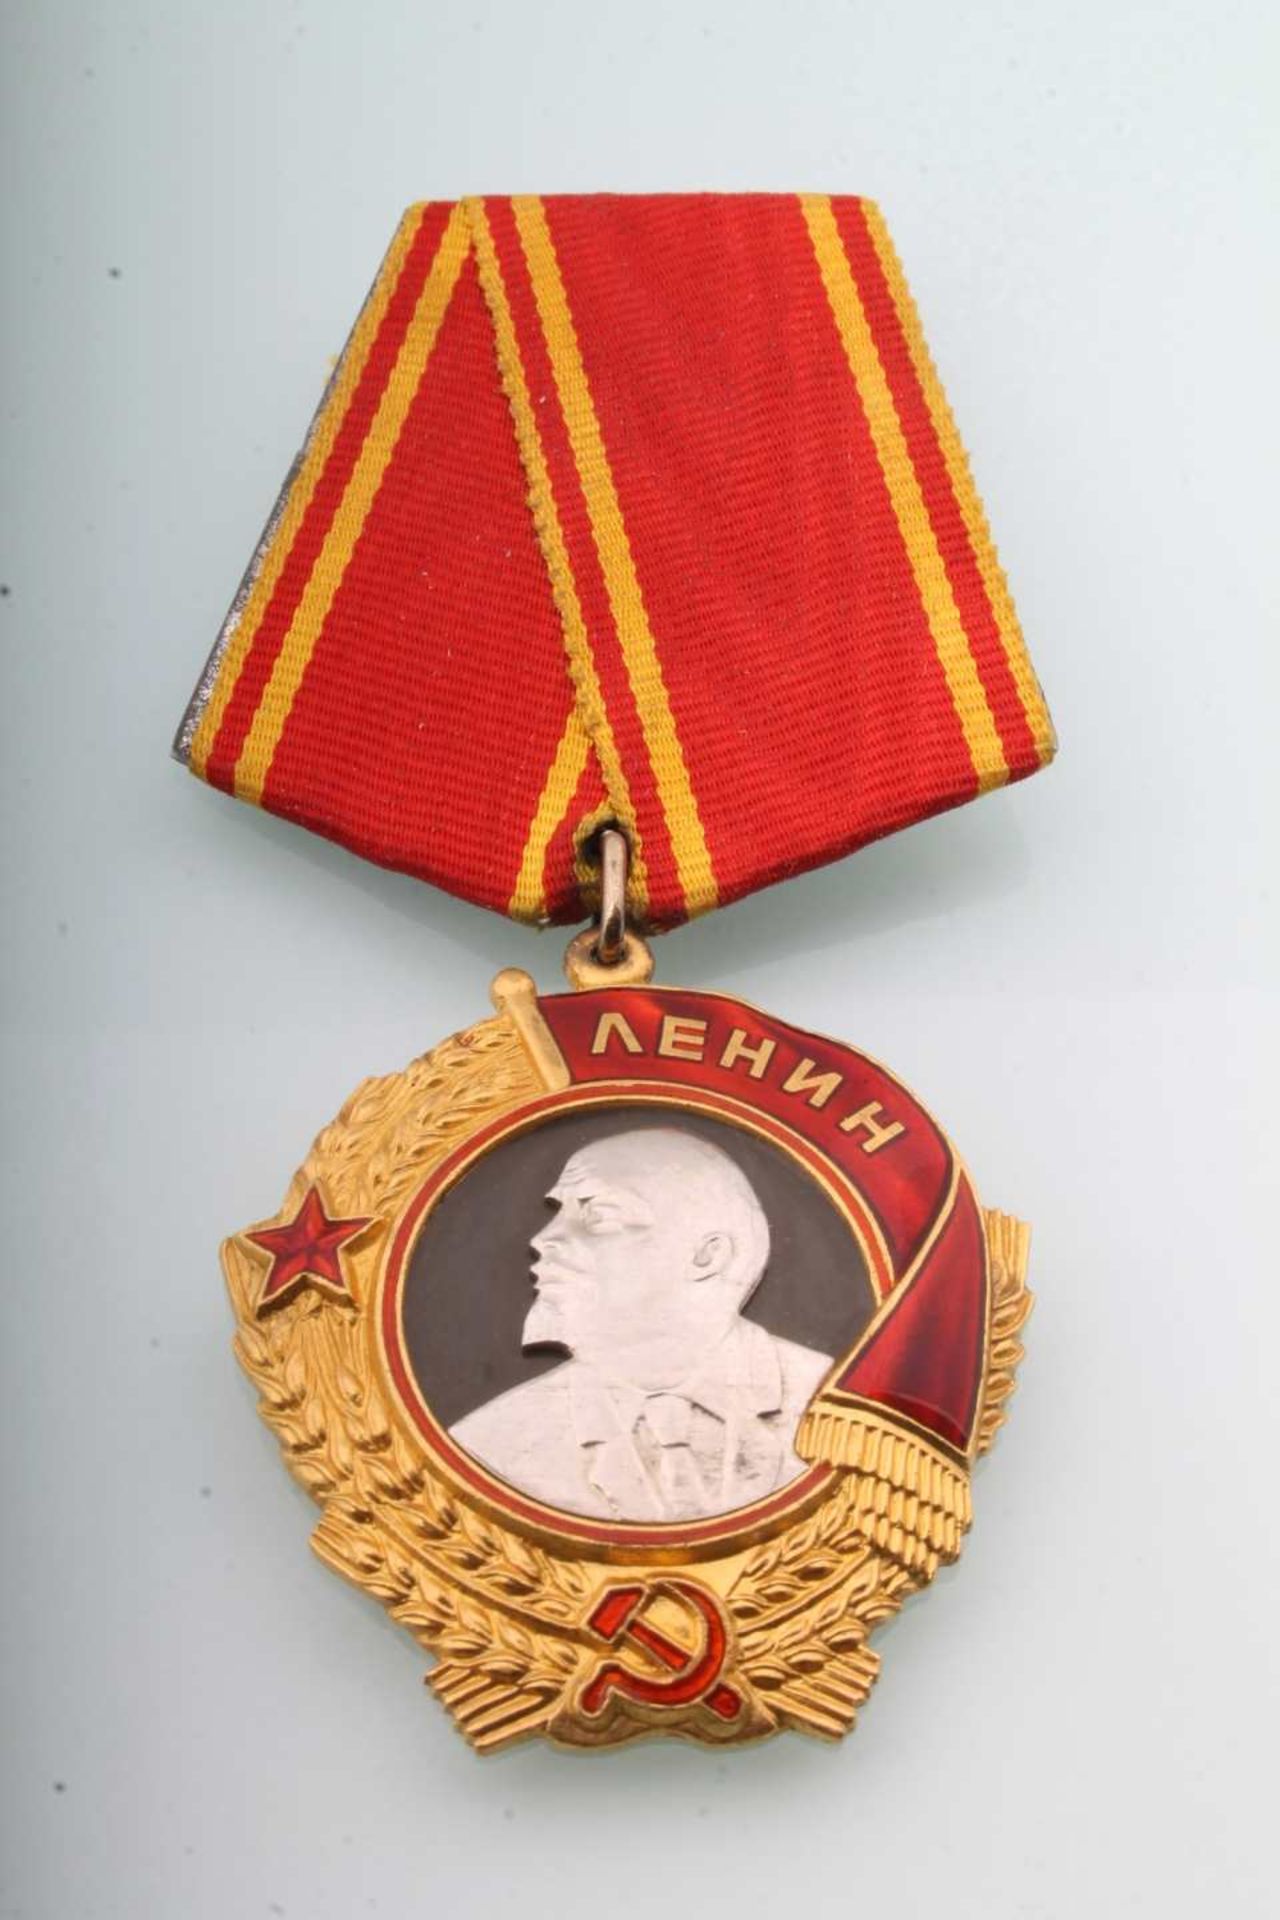 Leninorden Sowjetunion, Lenin medal soviet union, - Image 2 of 4